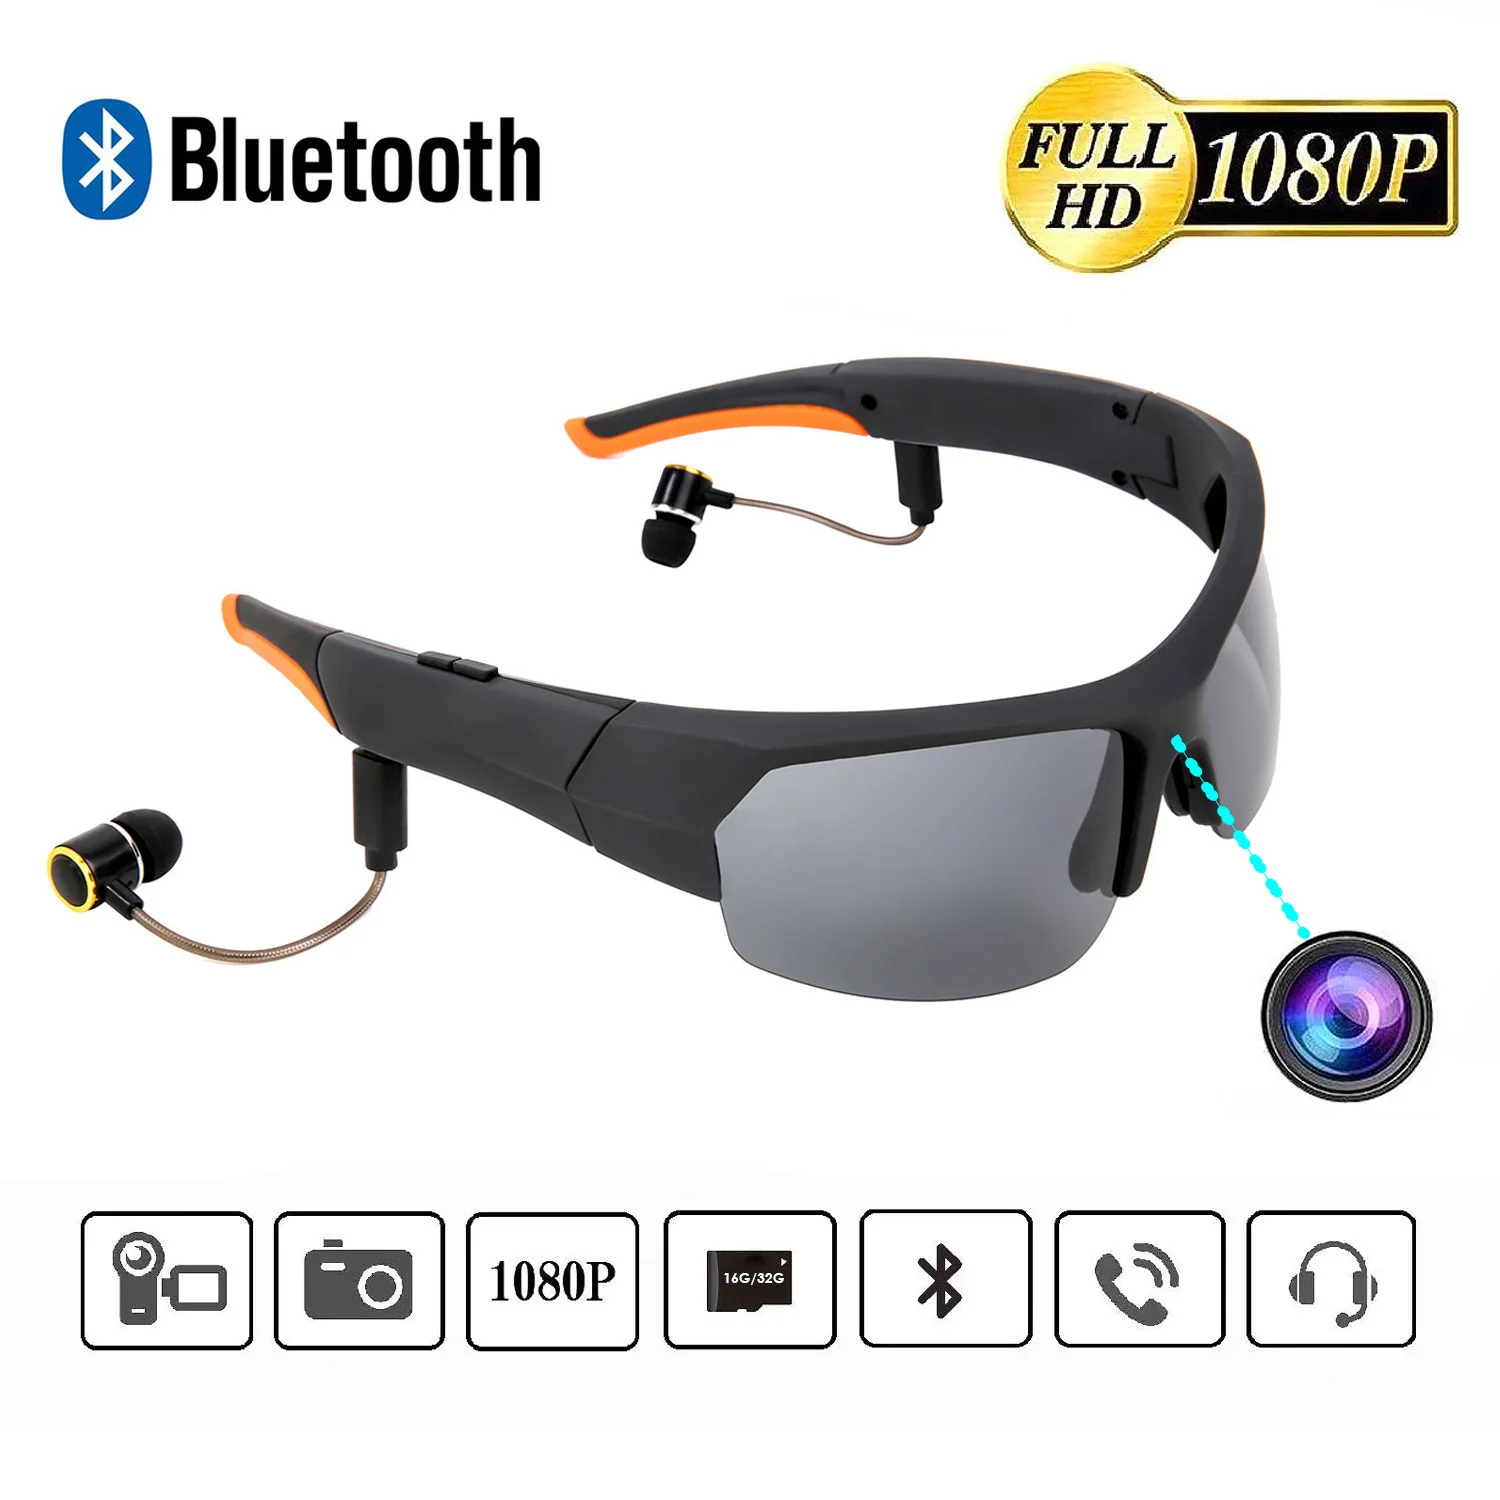 저렴한 2020 새로운 블루투스 HD 카메라 선글라스 헤드셋, 내장 32GB 메모리 1080P 블루투스 MP3 플레이어 사진 비디오 레코더 스포츠